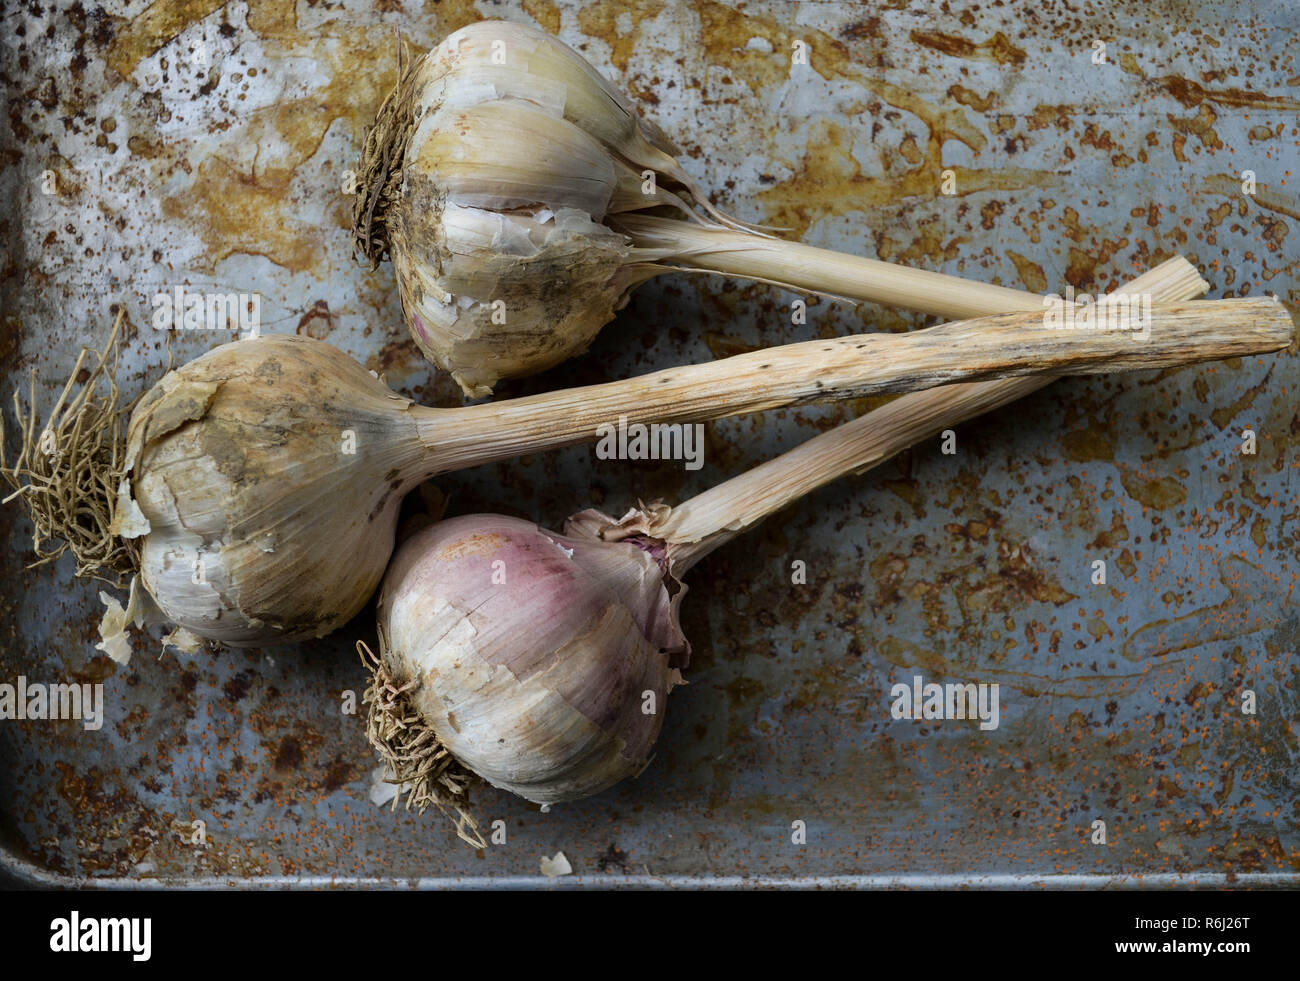 Tre hardneck bulbi di aglio con i piccioli, overhead shot (flat-lay) su un metallo spiovente sullo sfondo. Foto Stock